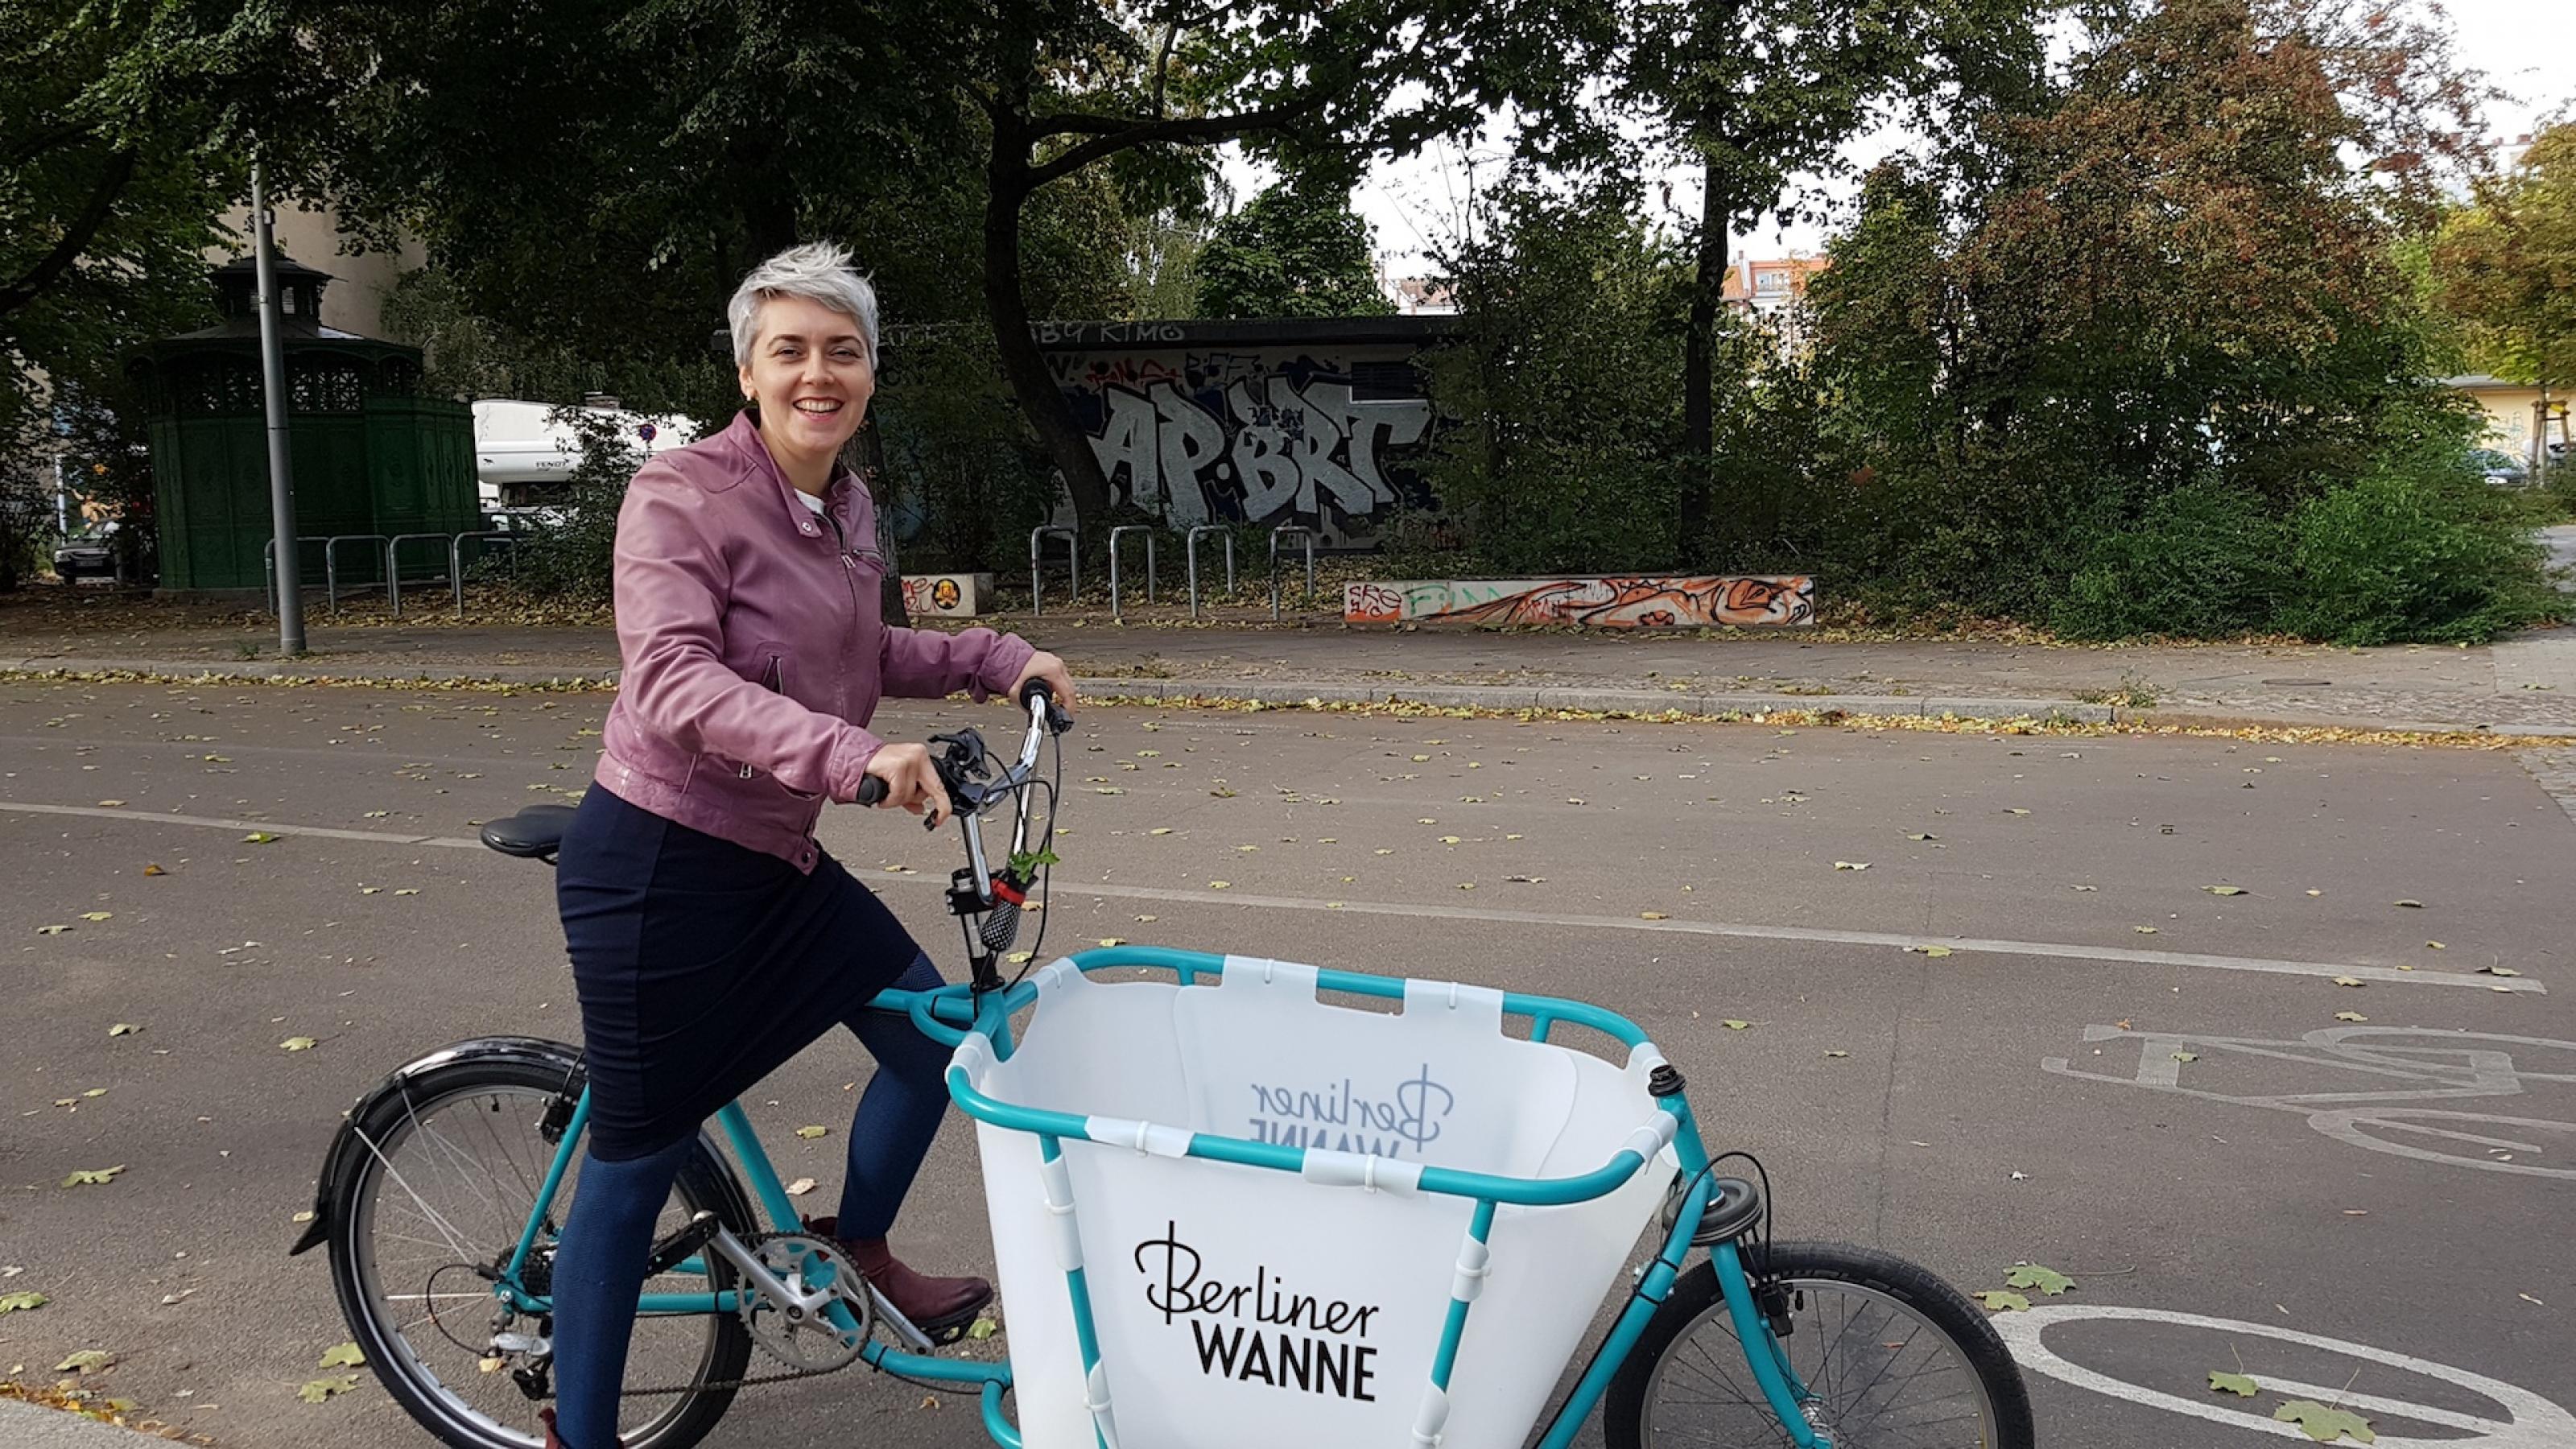 Die Mobilitätsforscherin Sophia Becker steht mit einem Lastenrad auf einer zweispurigen Straße. Das Lastenrad hat einen türkisfahrbenenn Rahmen und vor dem Lenker eine weiße Box. In türkisfarbener Schrift  steht „Berliner Wanne“ auf der Lastenradbox.